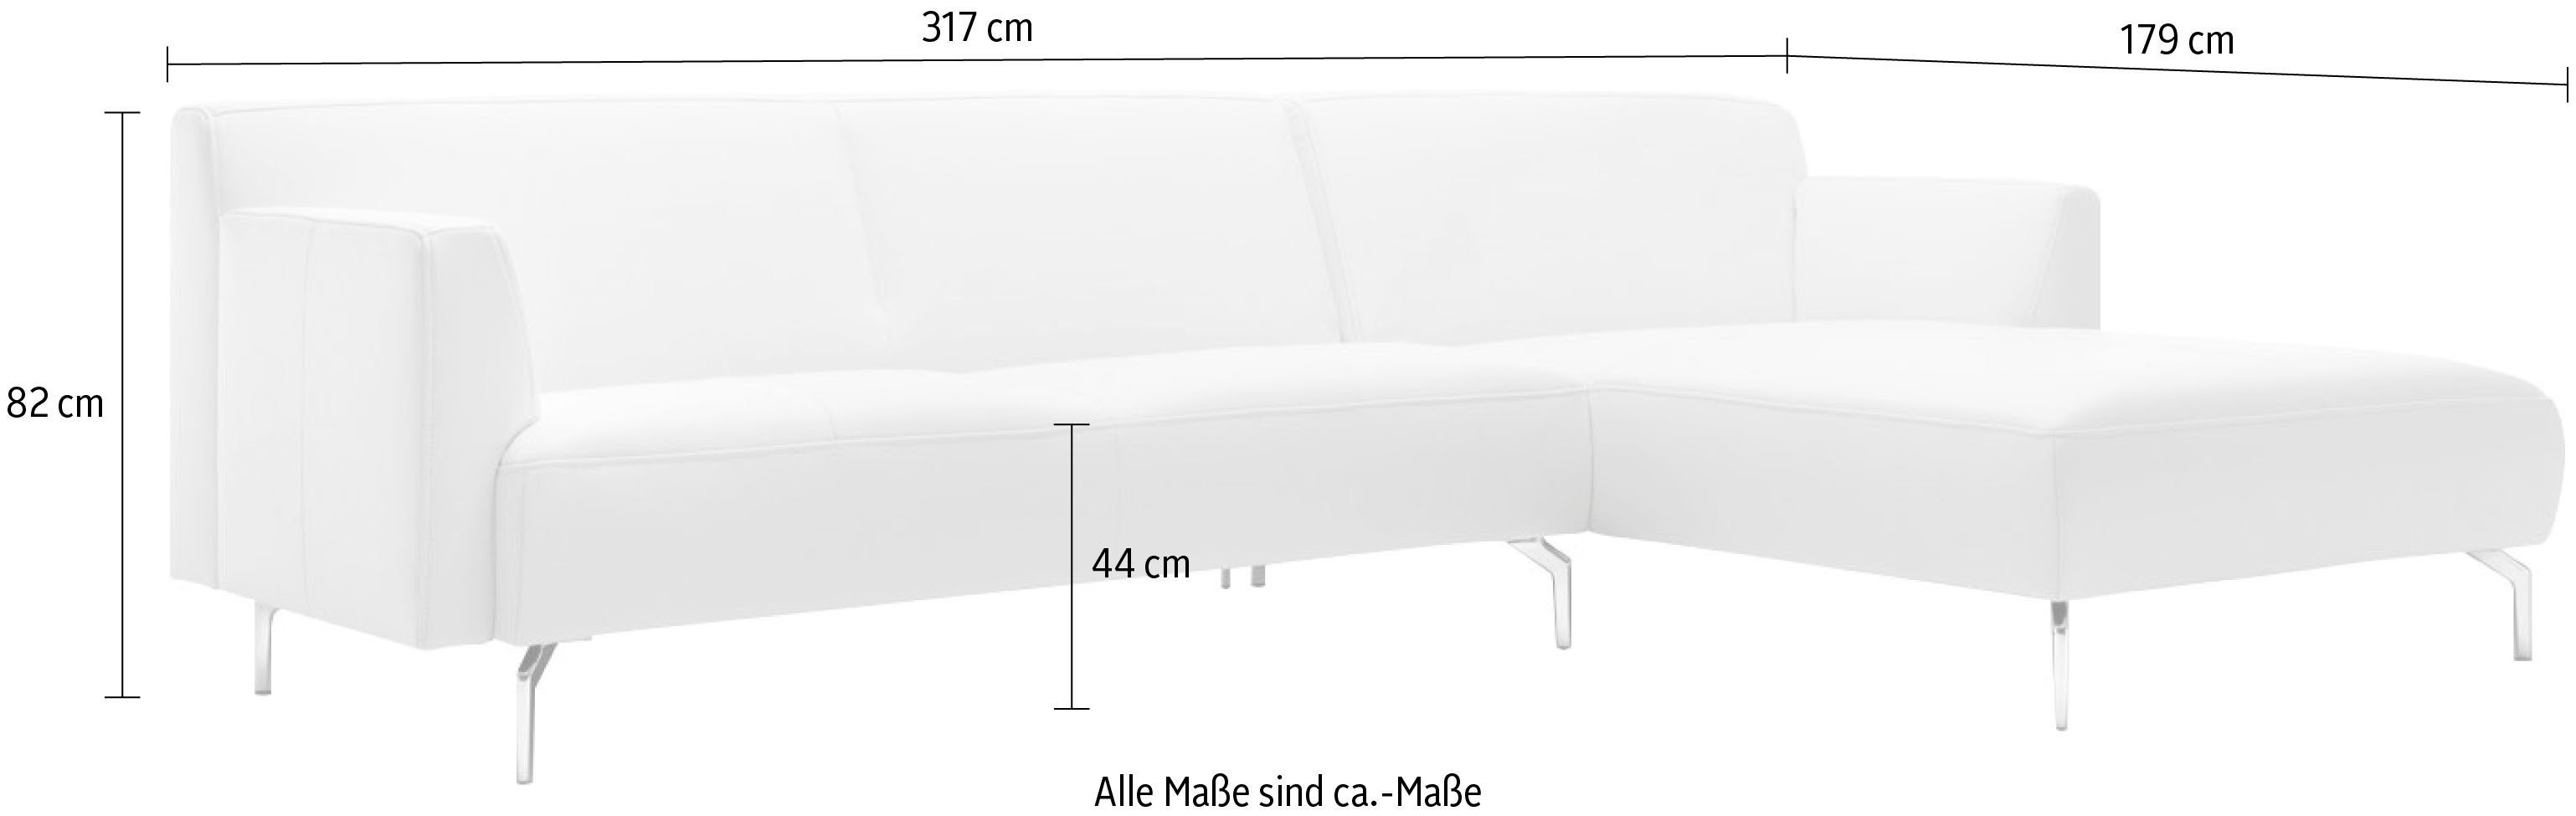 Breite in hülsta schwereloser sofa cm Optik, minimalistischer, 317 Ecksofa hs.446,